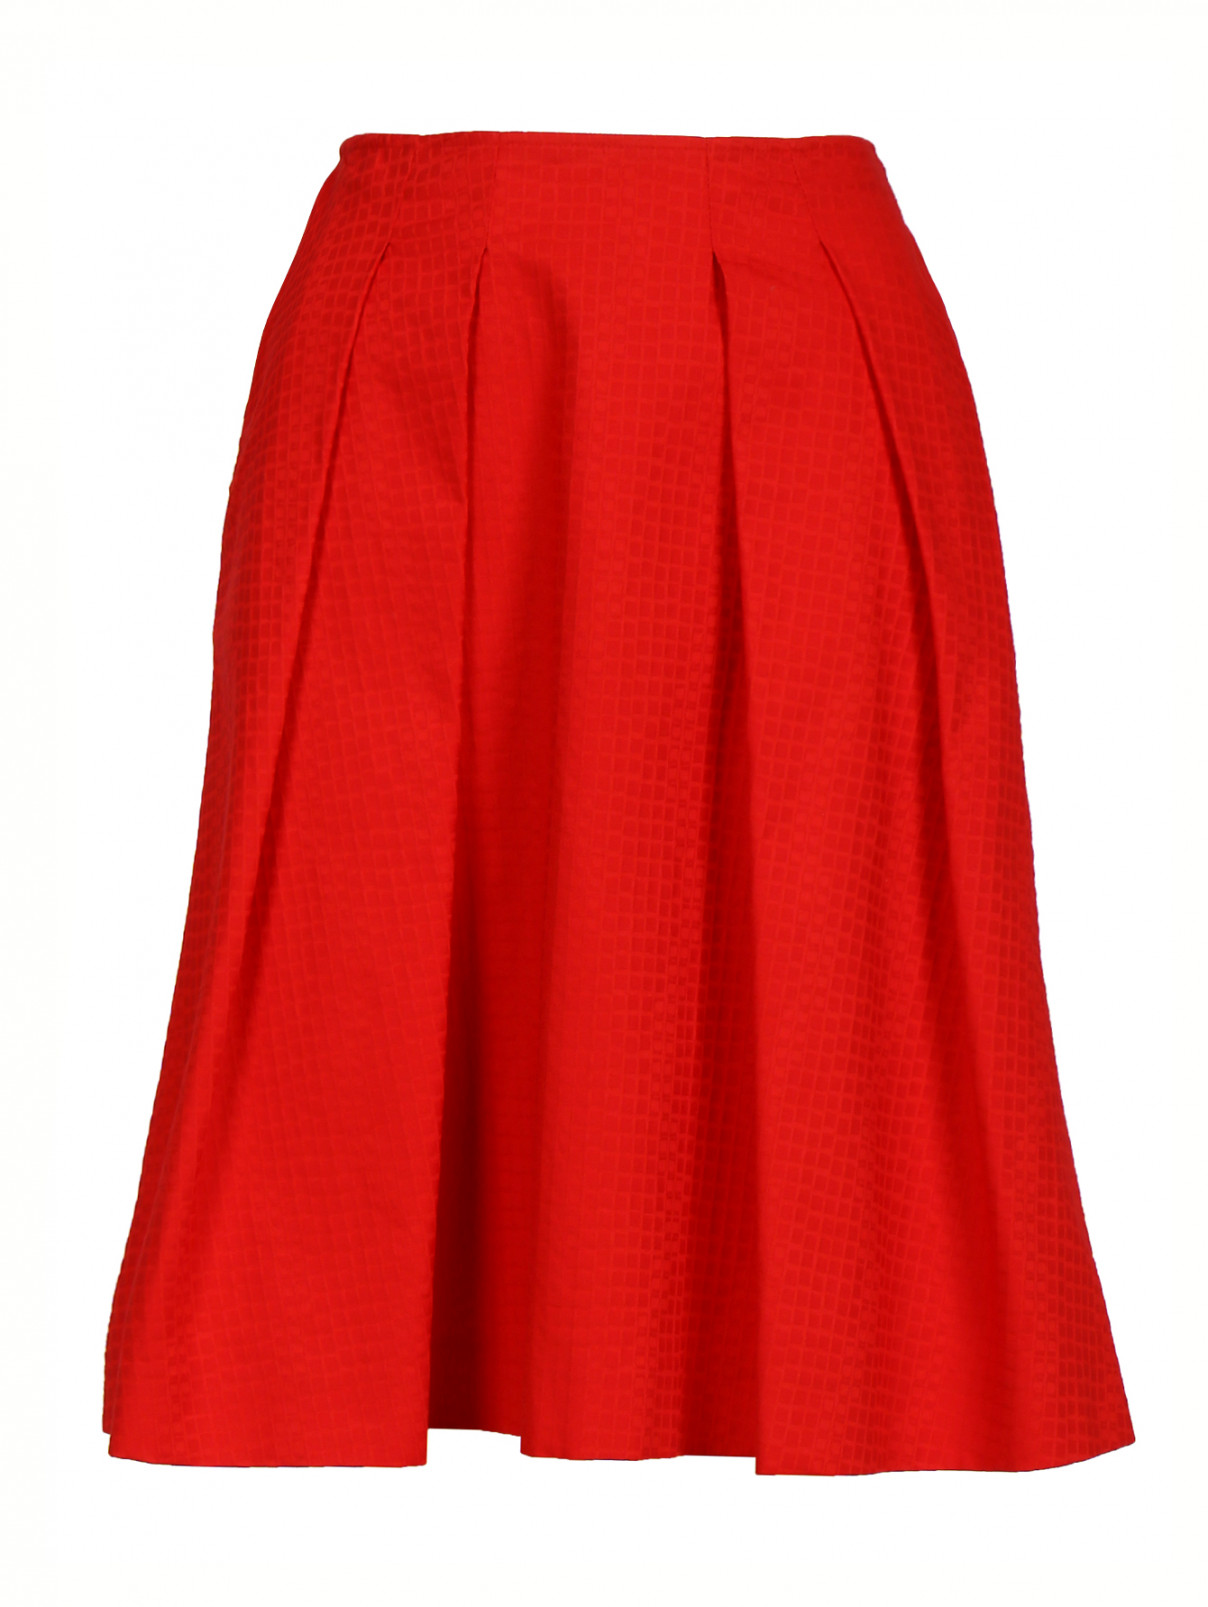 Юбка-трапеция из хлопка с боковыми карманами Jil Sander Navy  –  Общий вид  – Цвет:  Красный